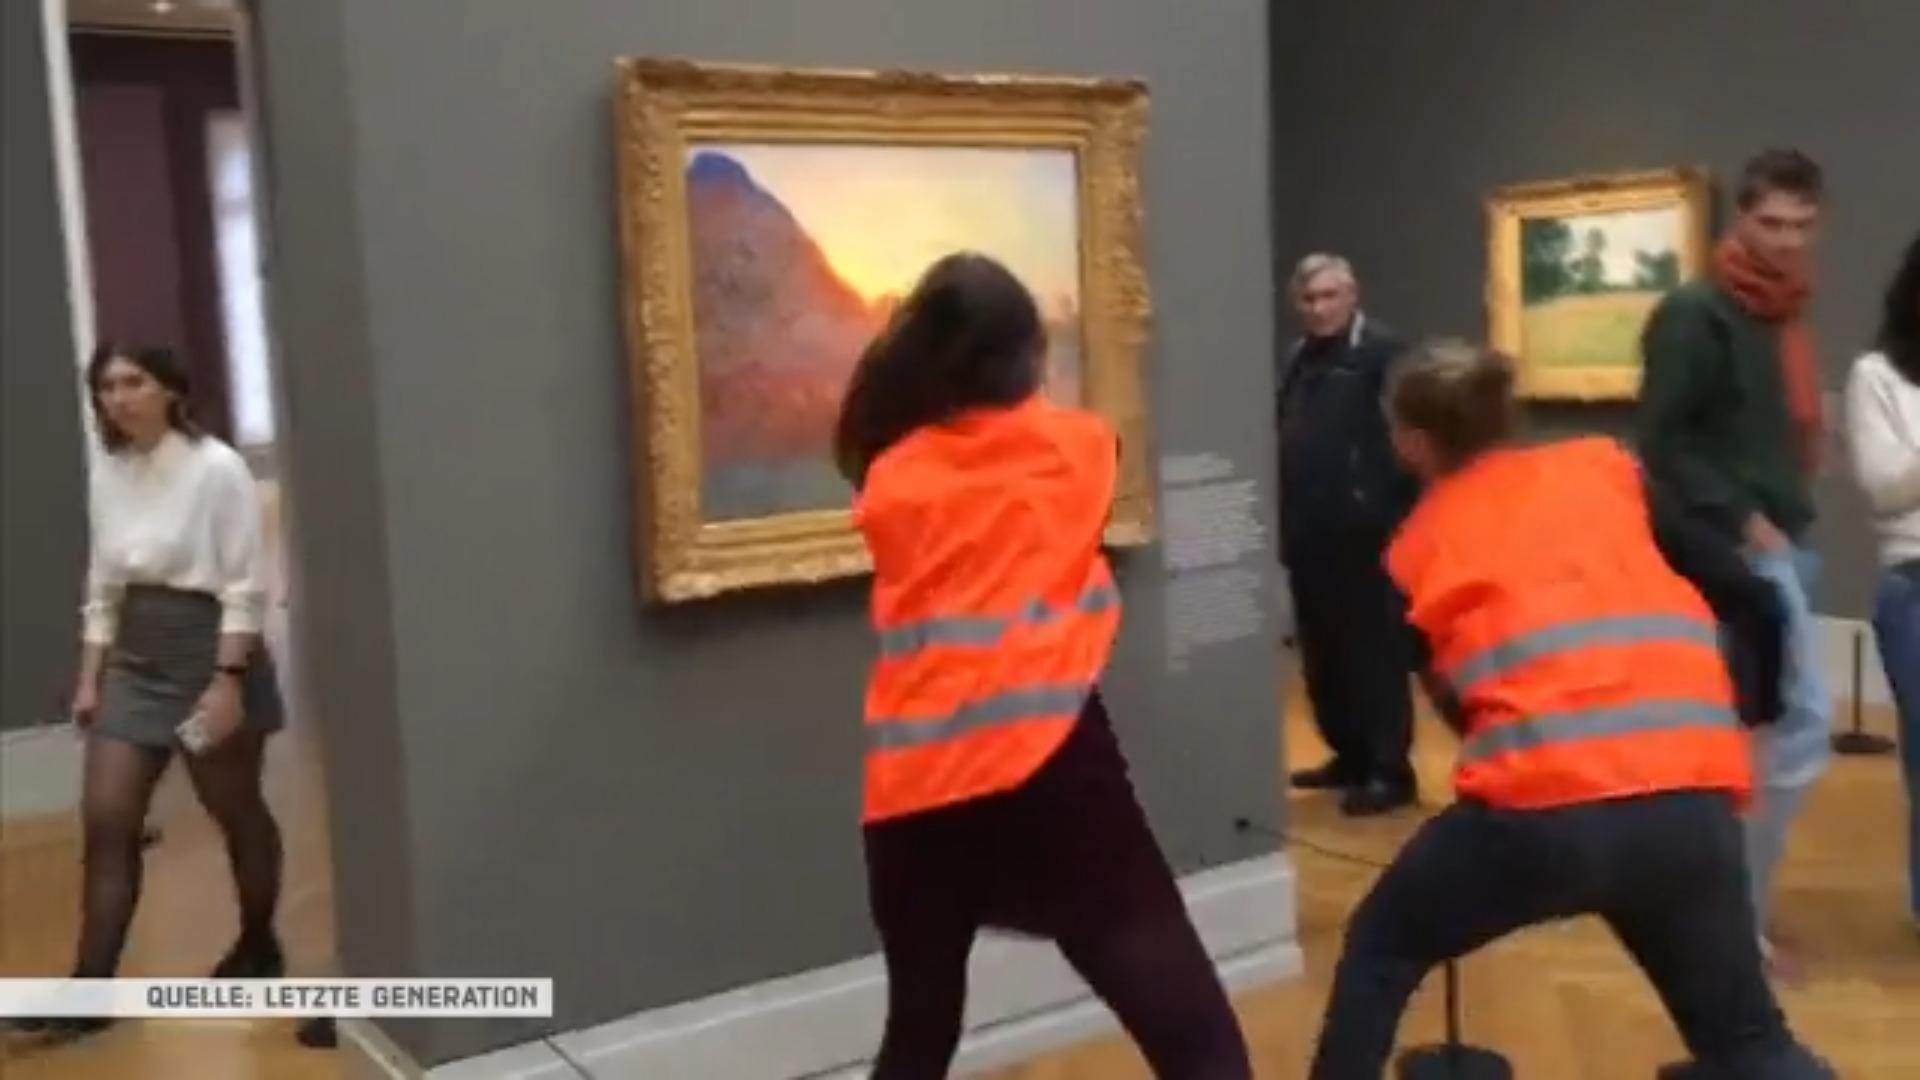 Sogenannte Klima-Aktivisten attackieren Kunstwerke Kunstwerke schützen